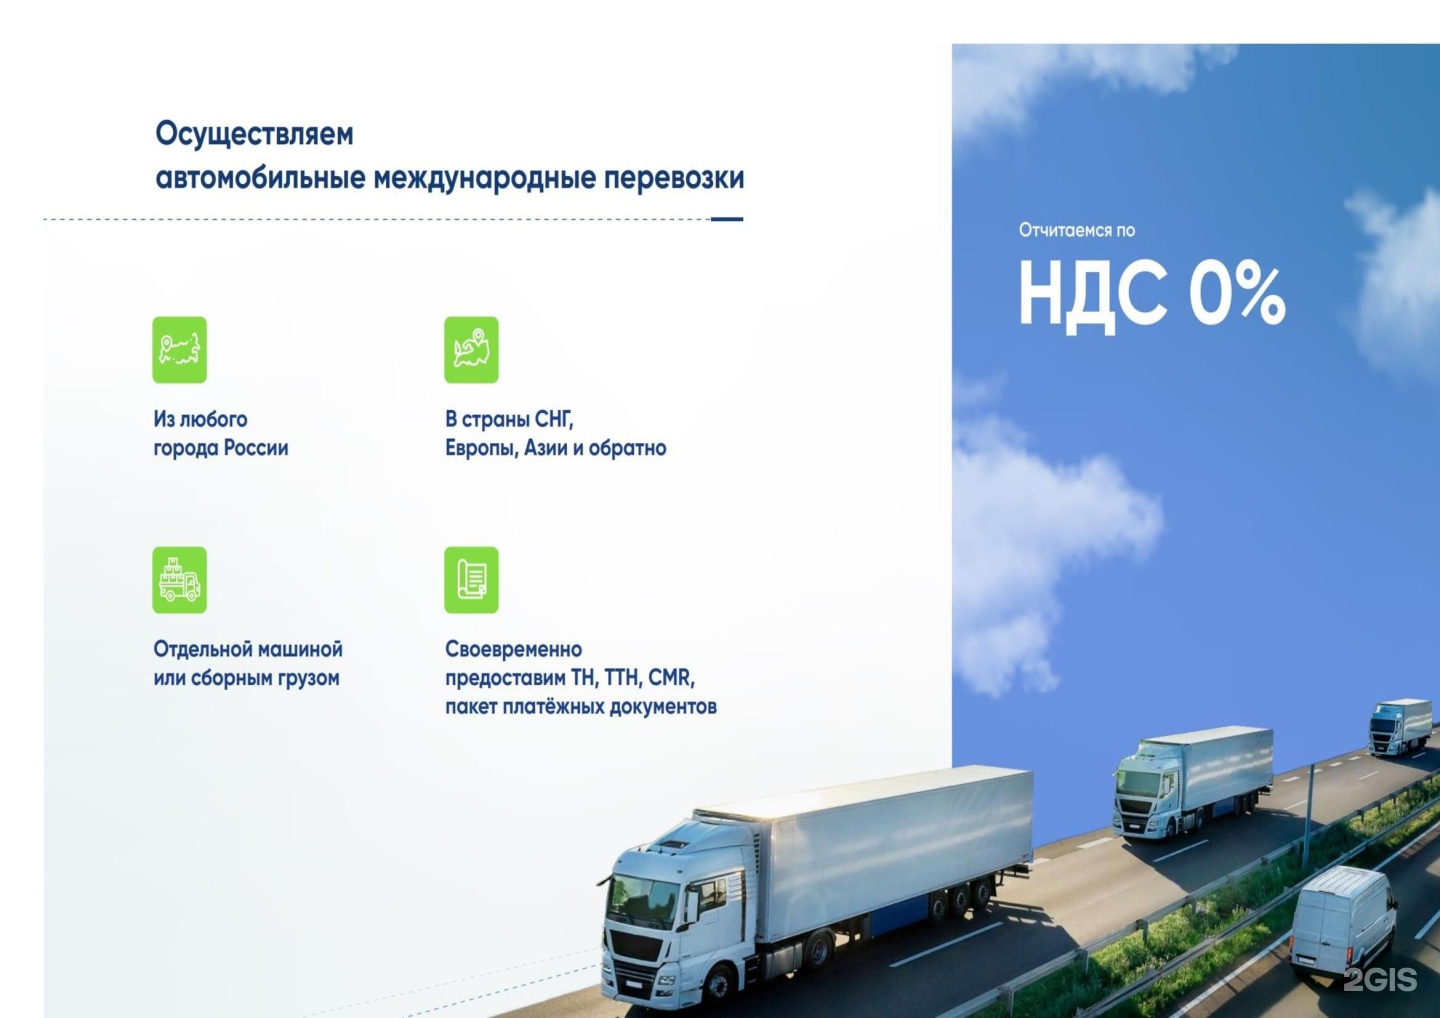 Транспортная компания Екатеринбург. Транспортный серви́с. Транспортные фирмы в ЕКБ. It сервисы транспортной компании.